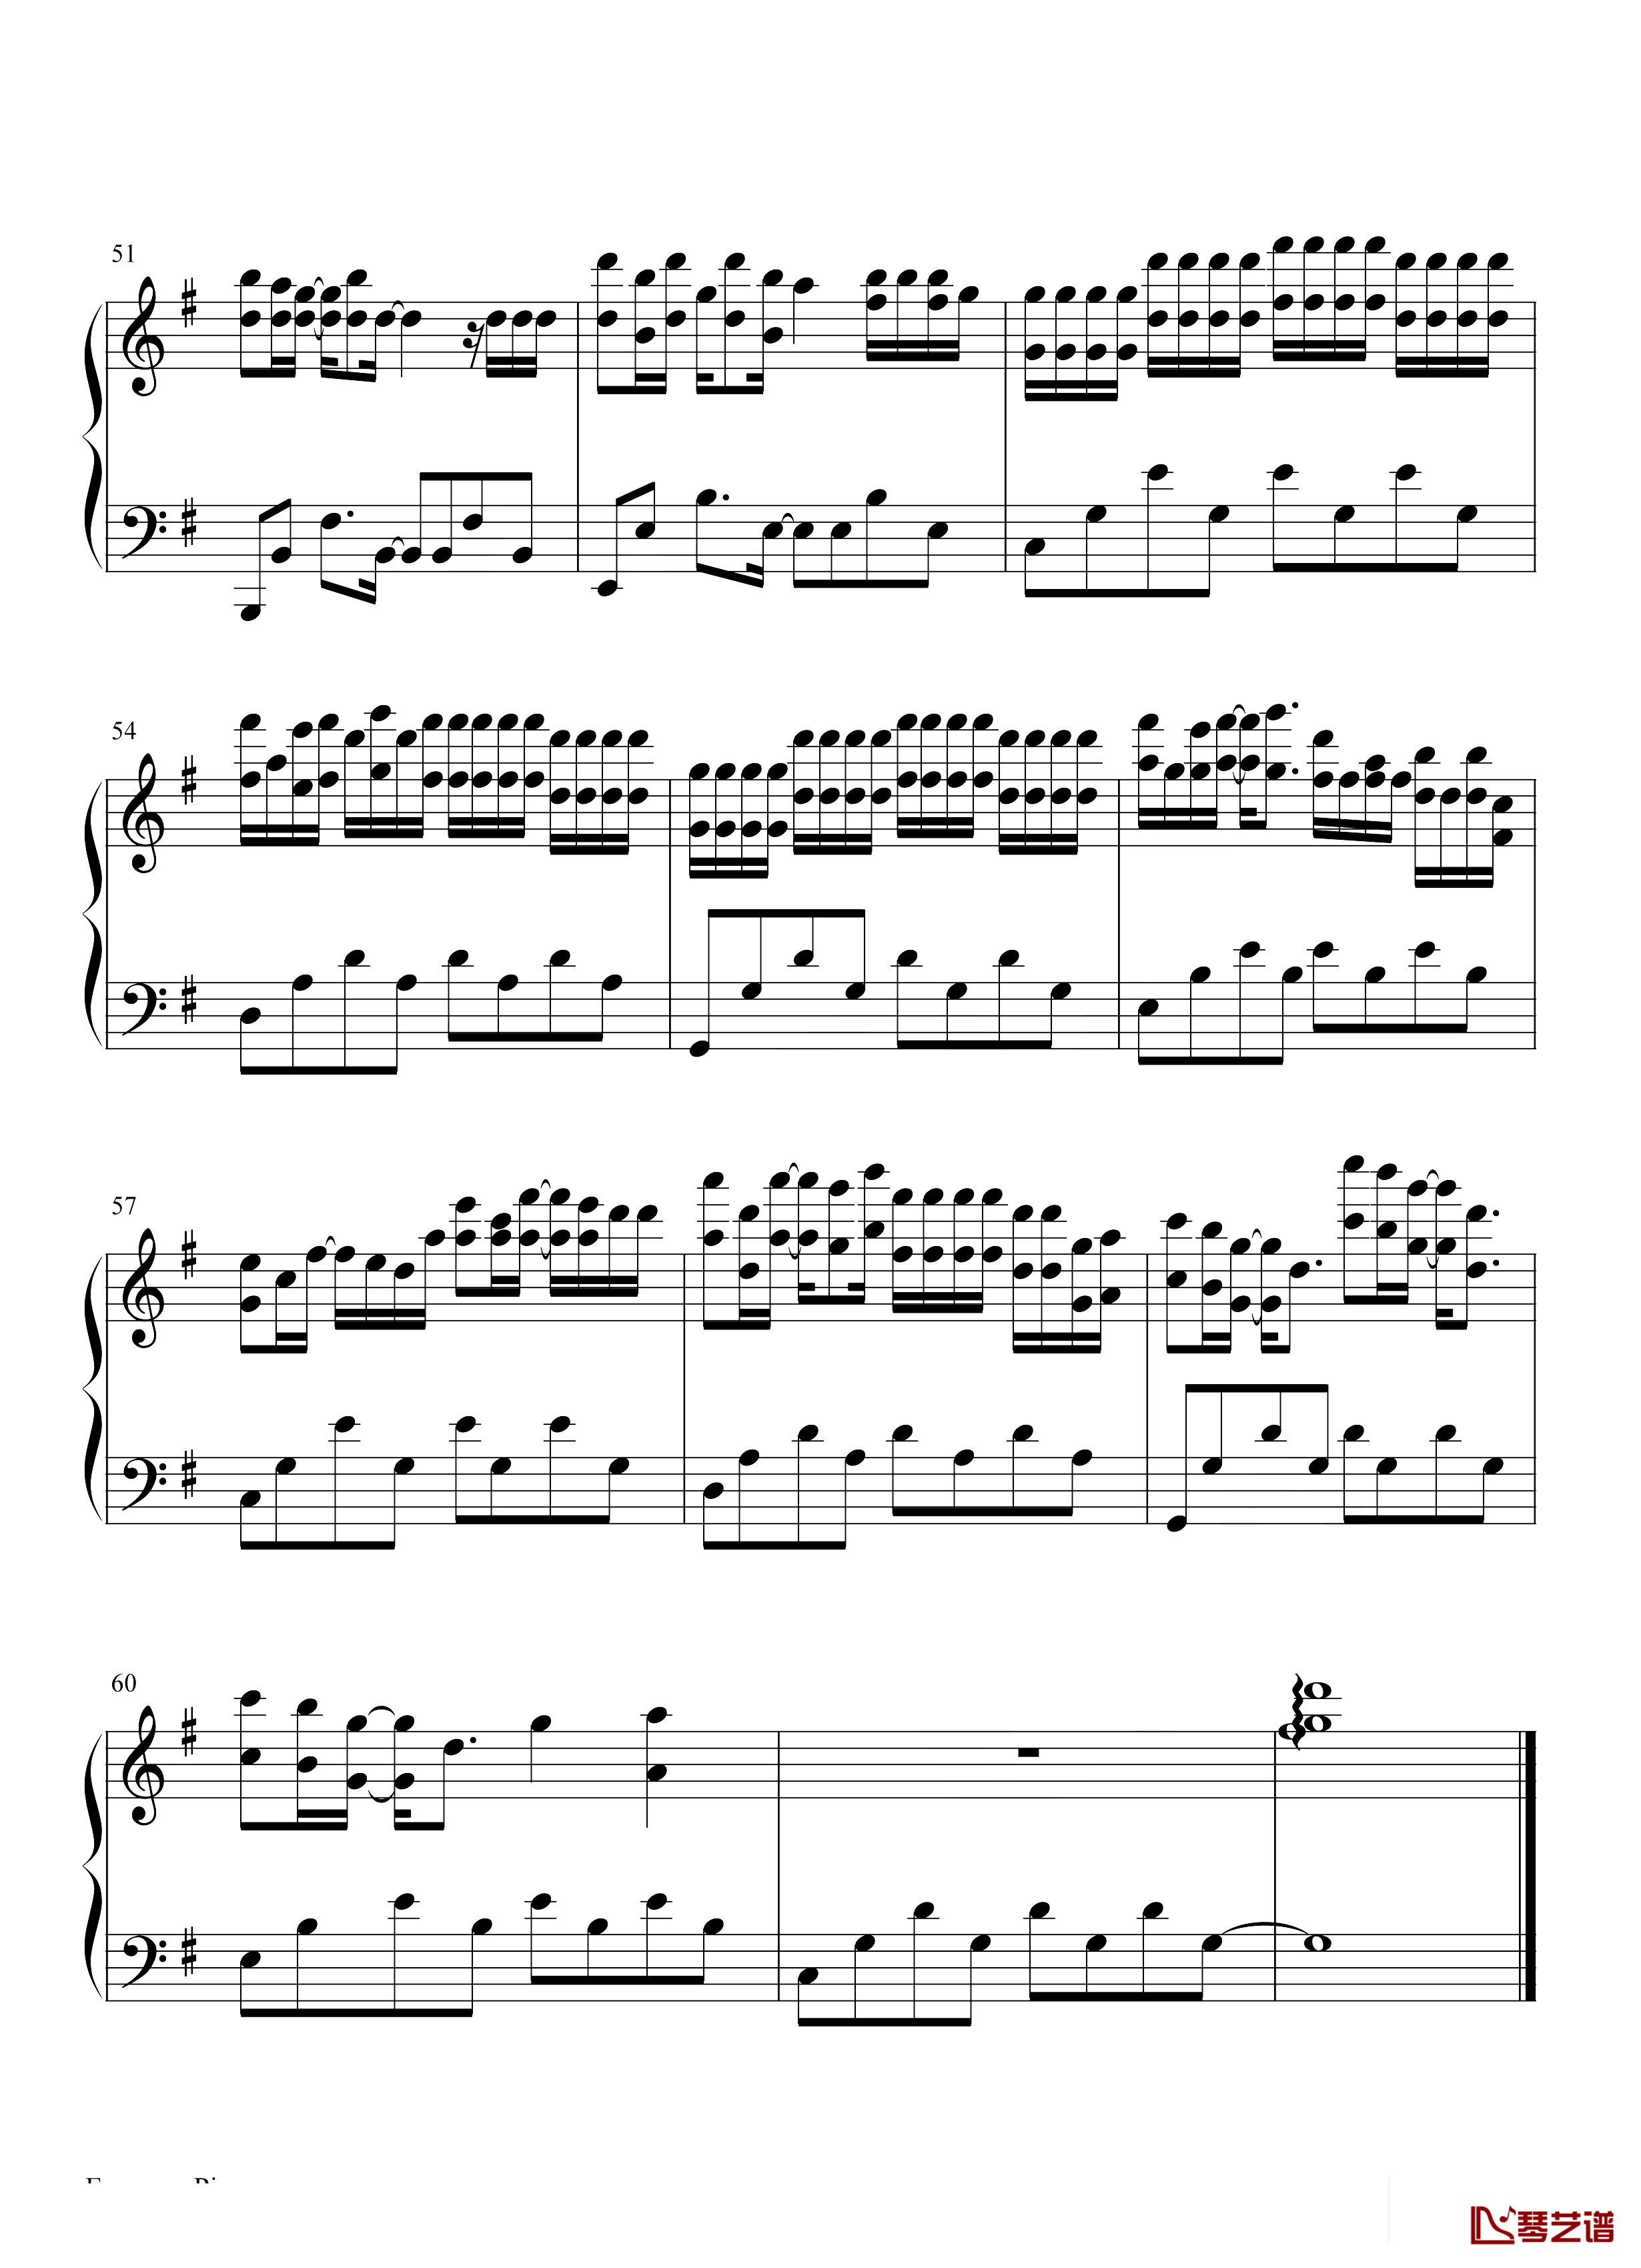 11钢琴谱-队长 黄礼格-就把我爱意都掩埋,但你能清楚的明白-抖音热歌1